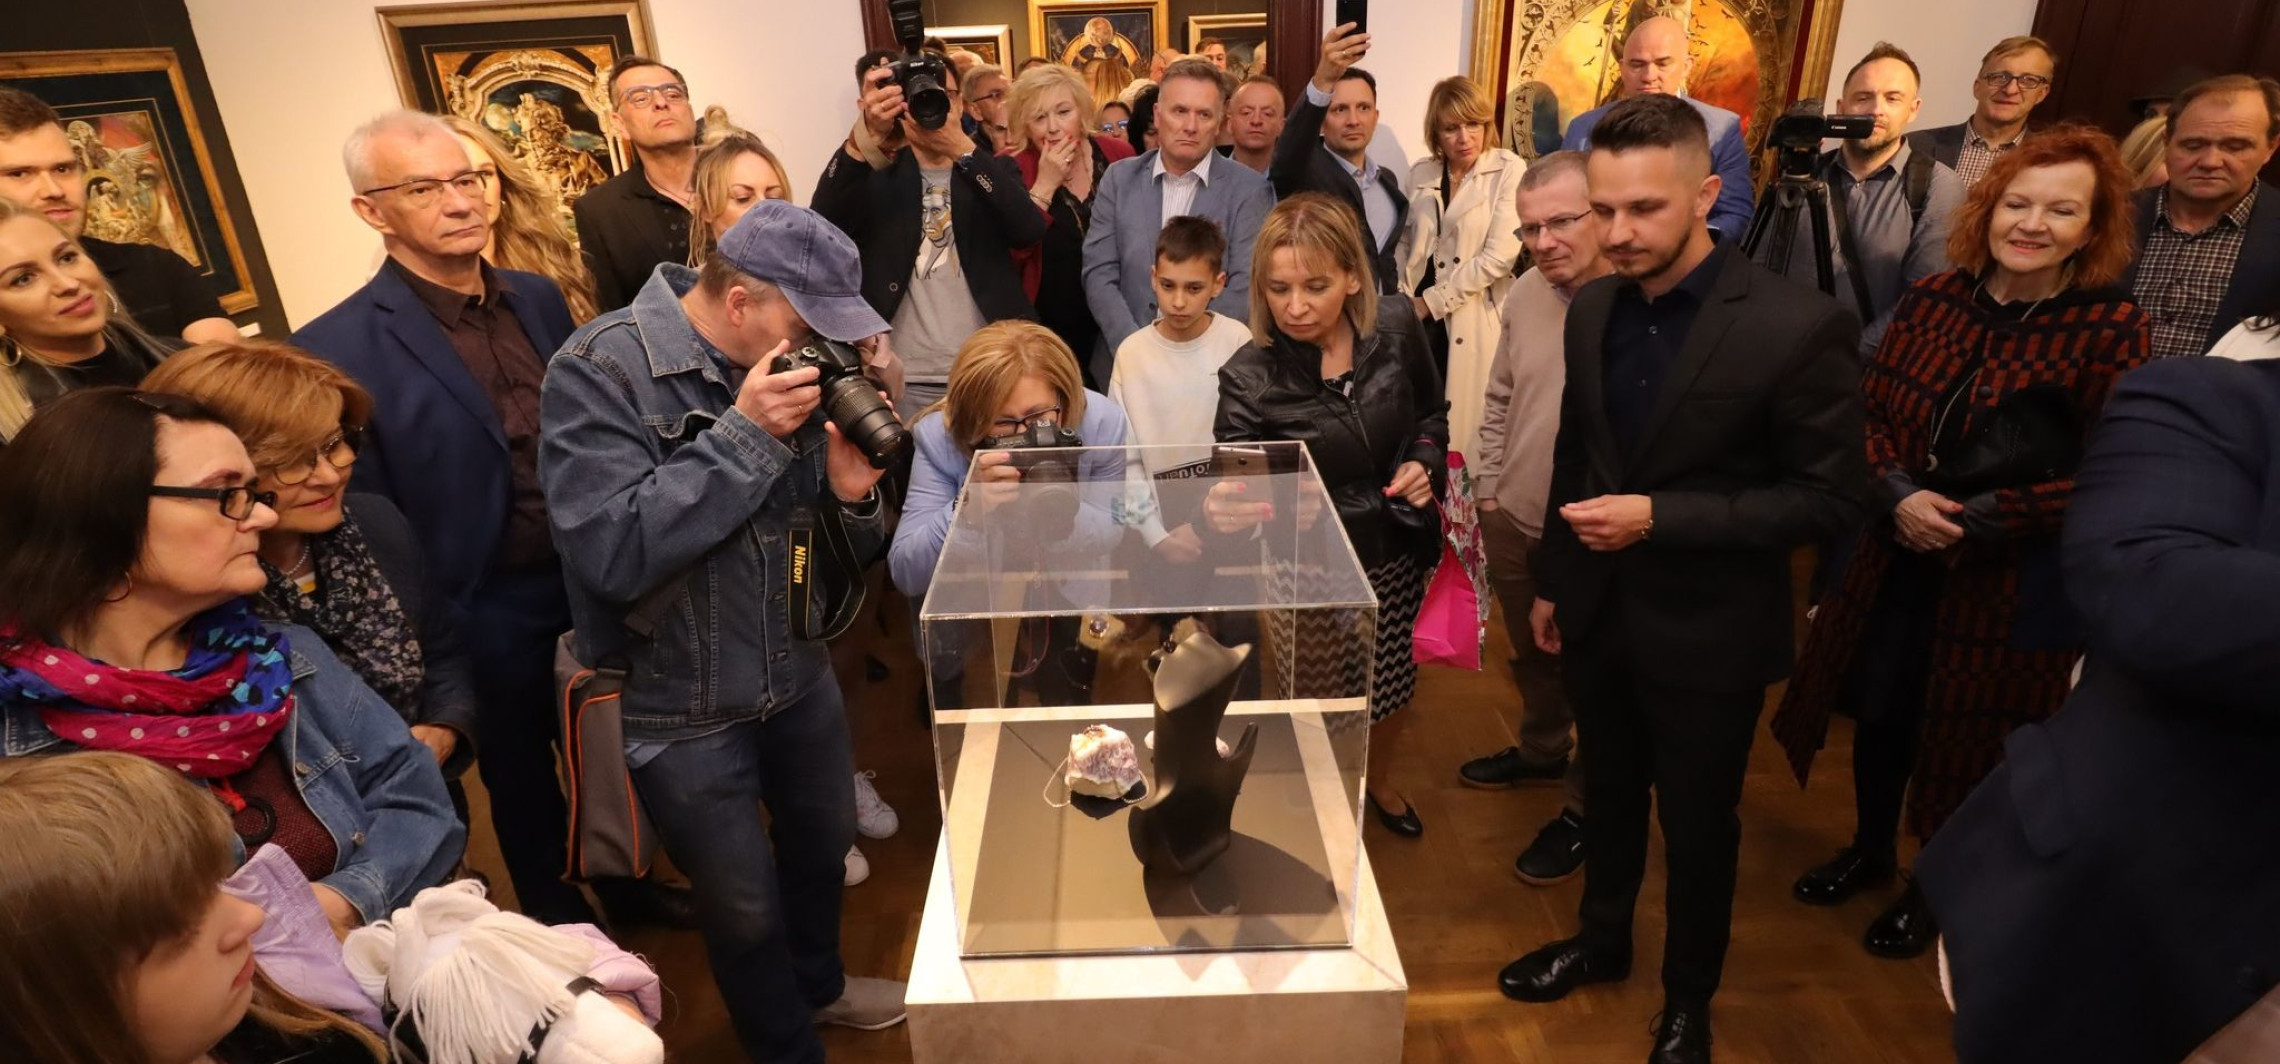 Inowrocław - Noc muzeów przyciągnęła wielu odwiedzających